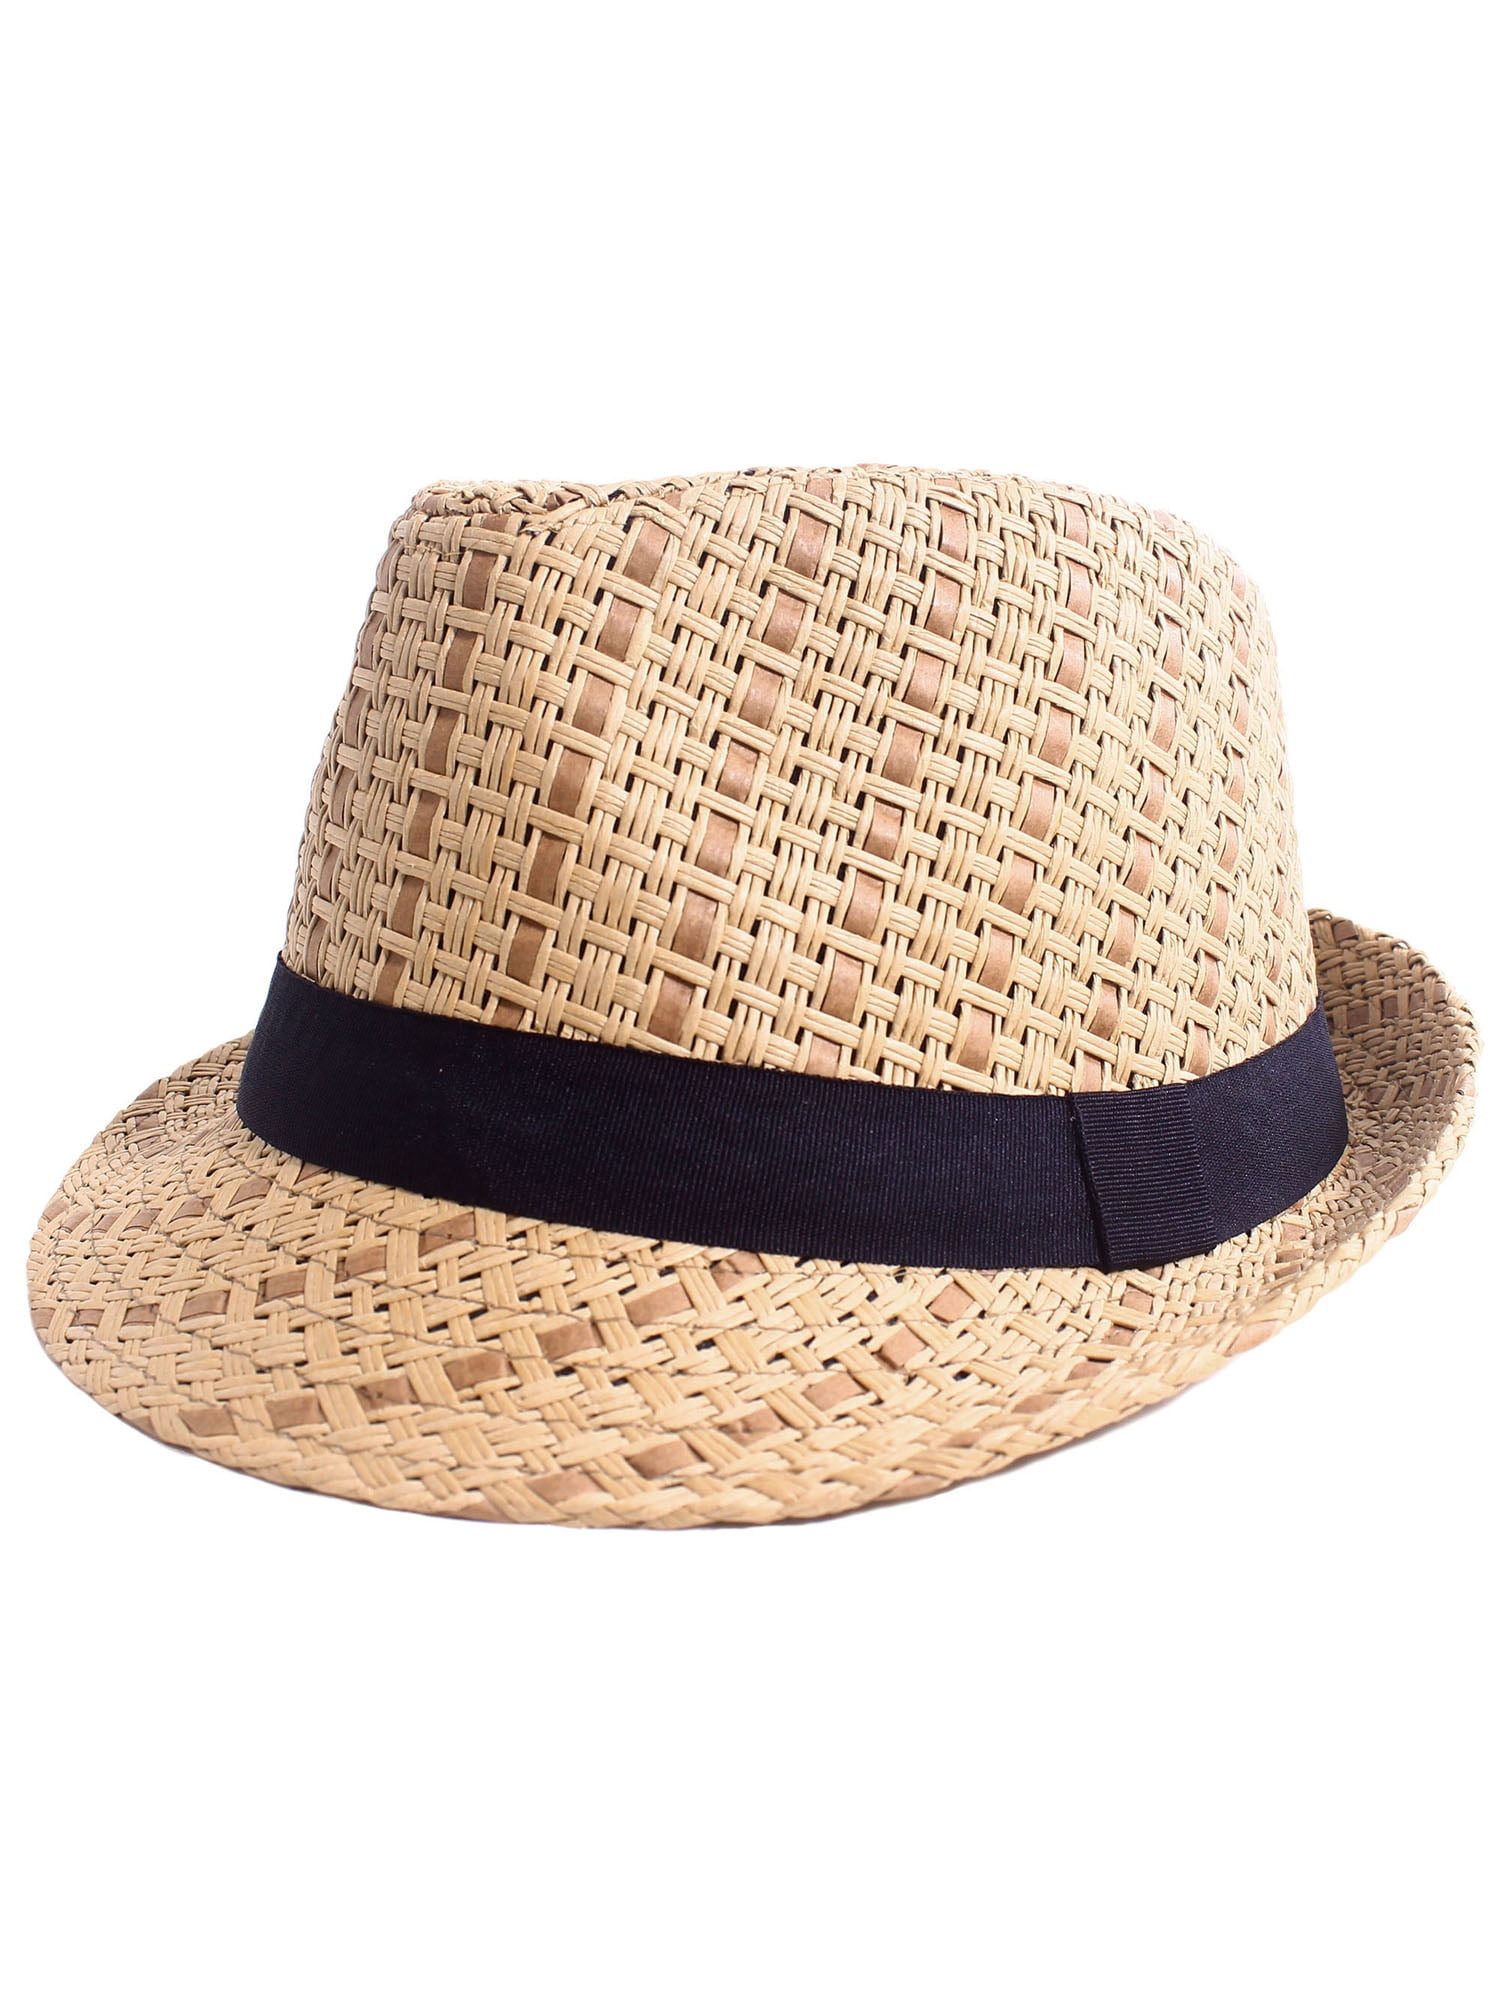 Цвет соломенной шляпы. Шляпа Pepe Jeans соломенная. Соломенная Федора. Соломенная шляпа Федора. Prada соломенная Панама.